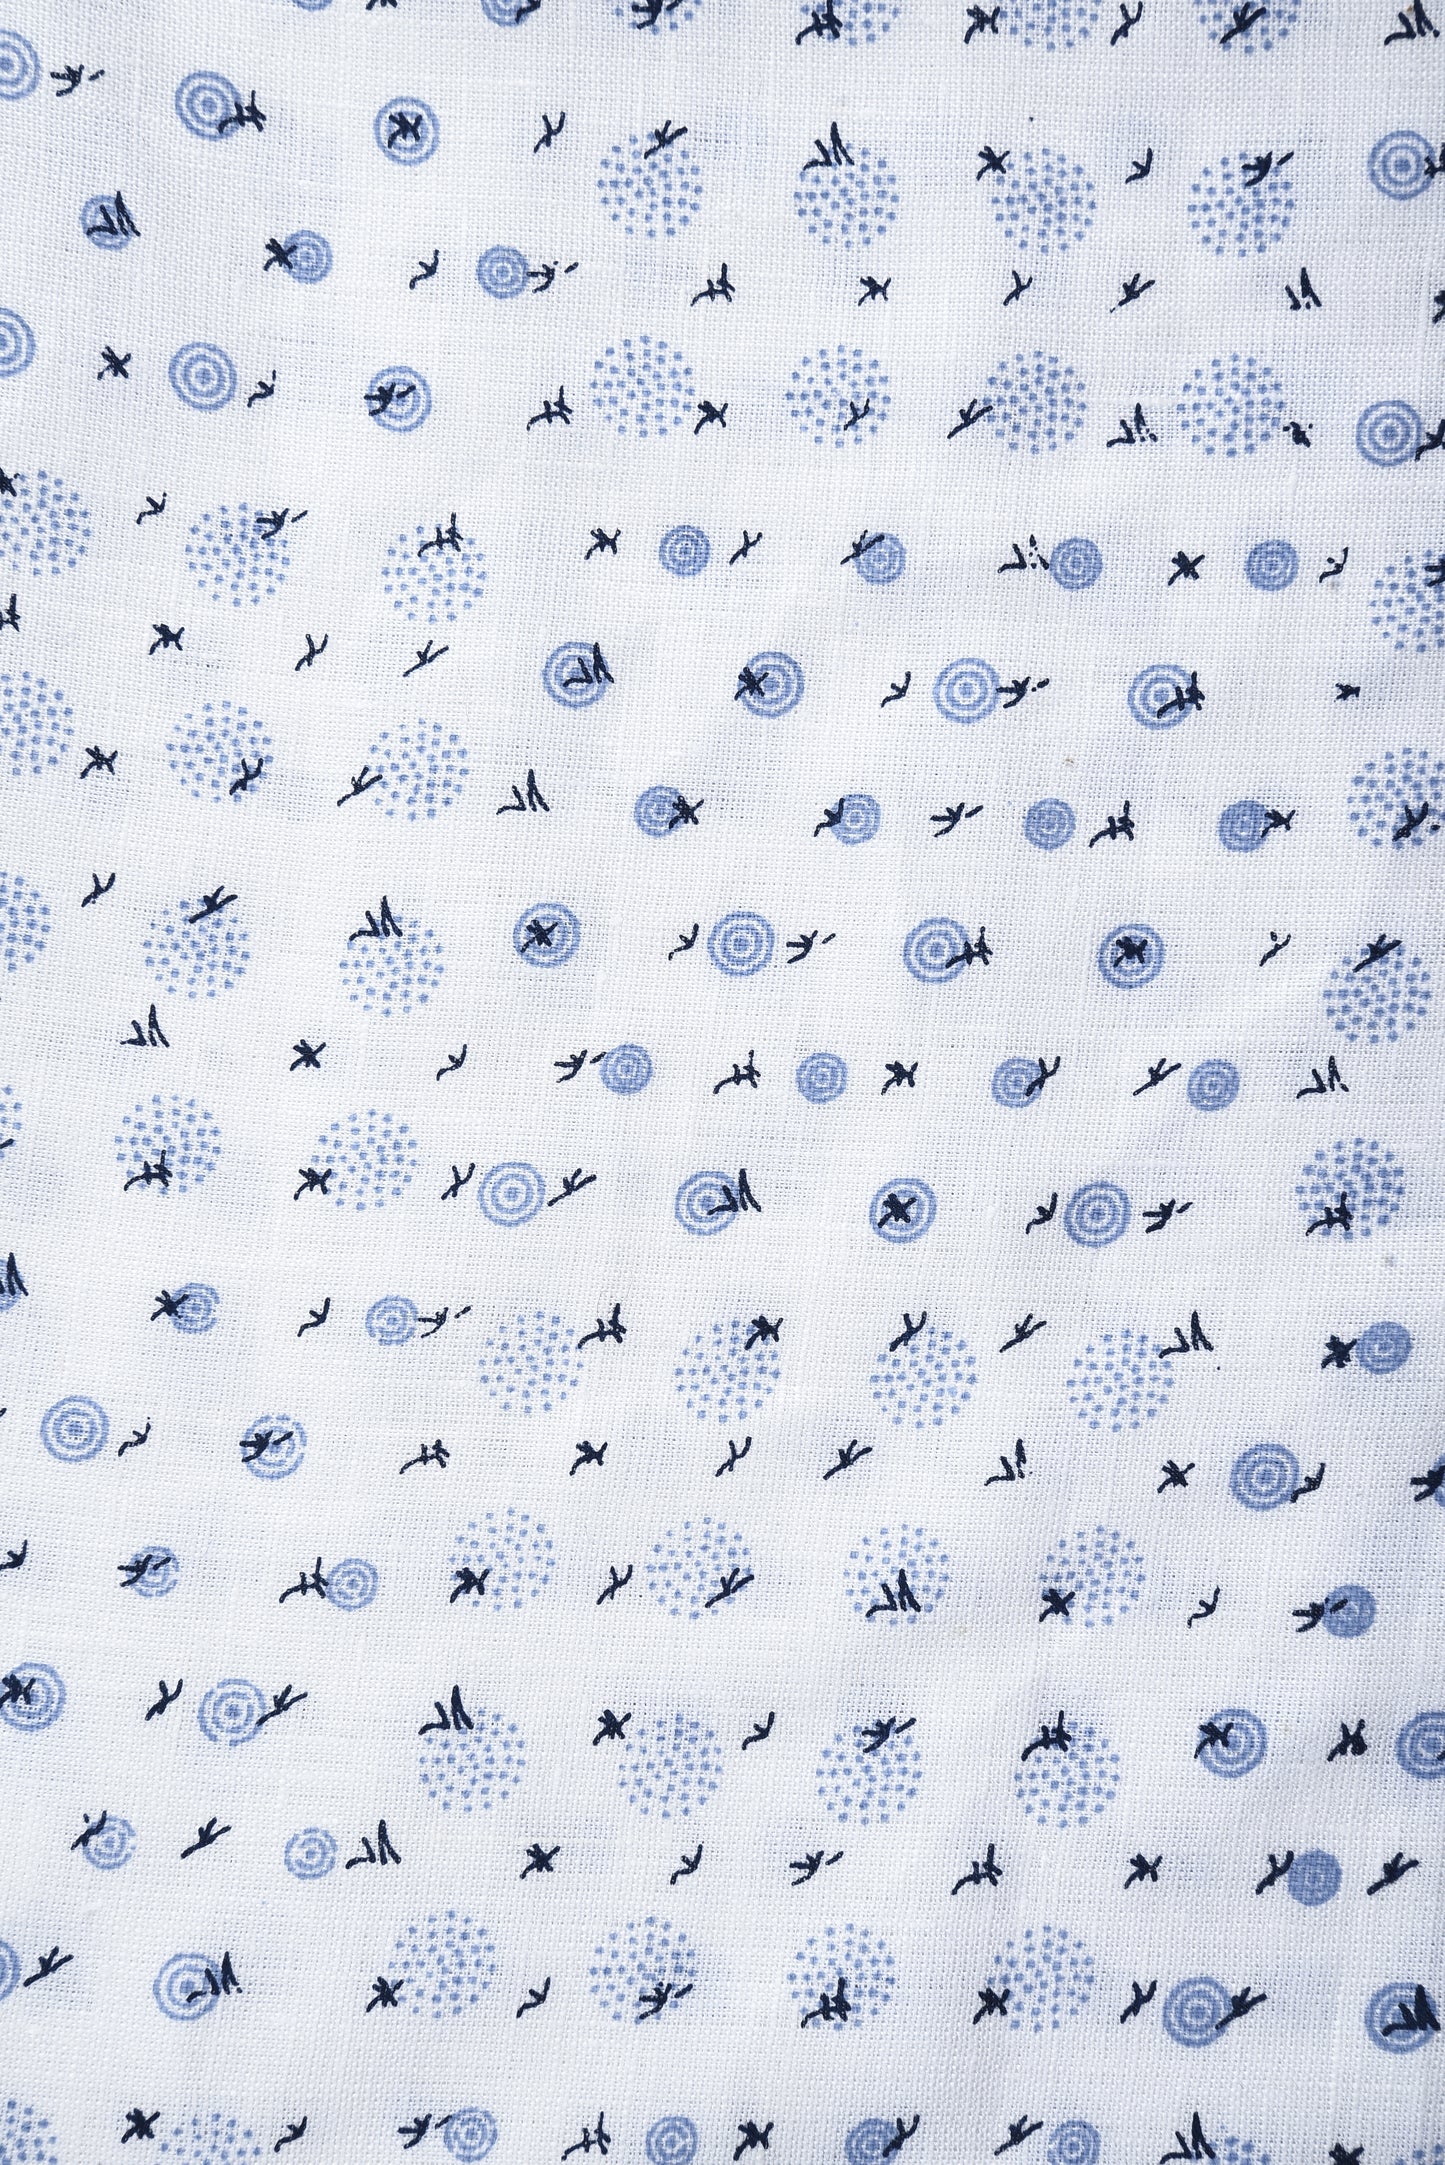 Linen: Blue Printed Birds On White